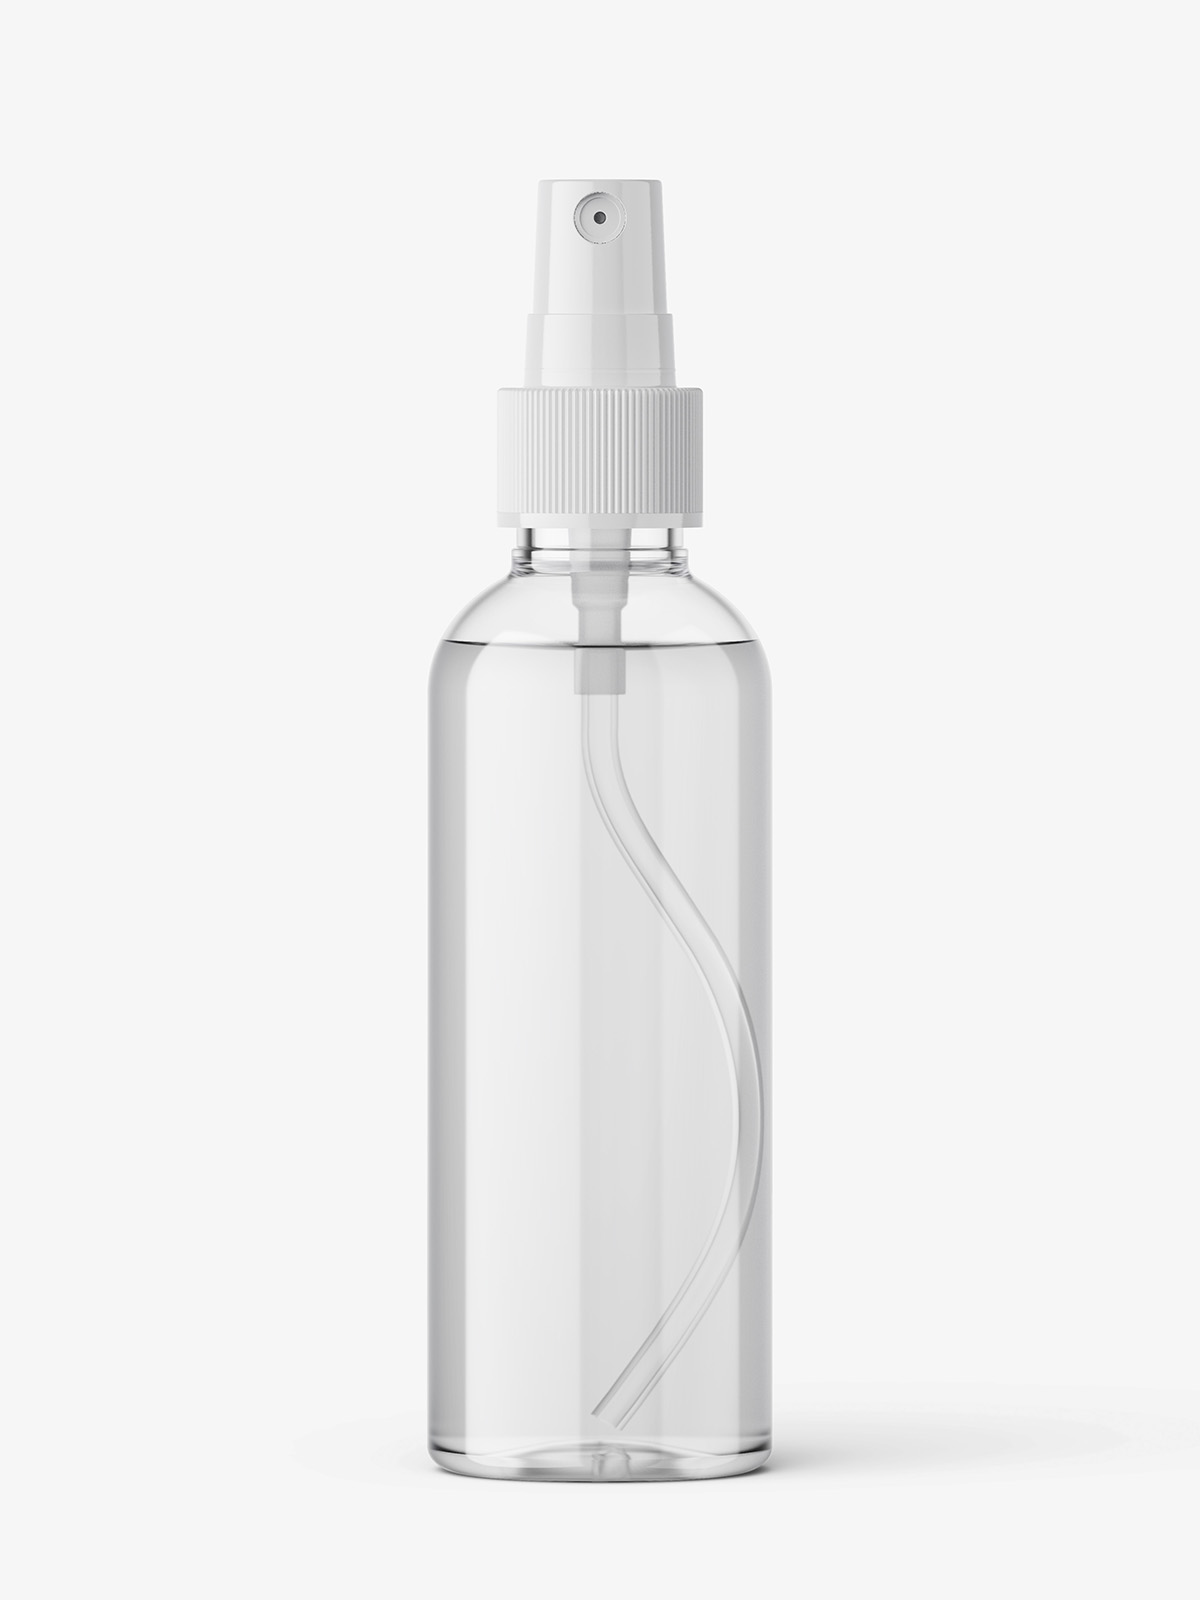 Download Transparent Mist Spray Bottle Mockup Smarty Mockups